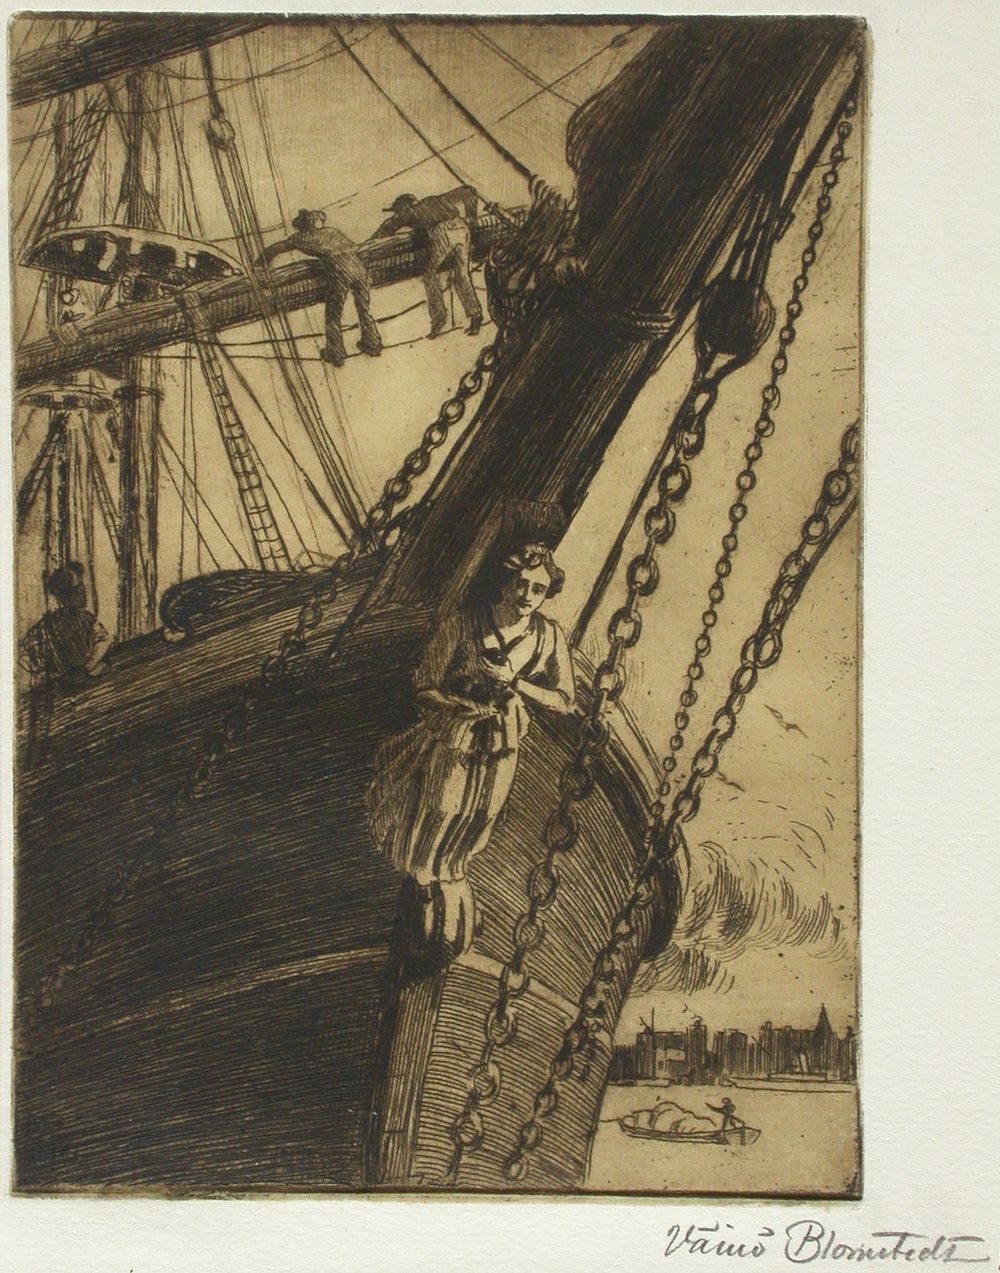 Laivan keulakuva, 1912, Väinö Blomstedt